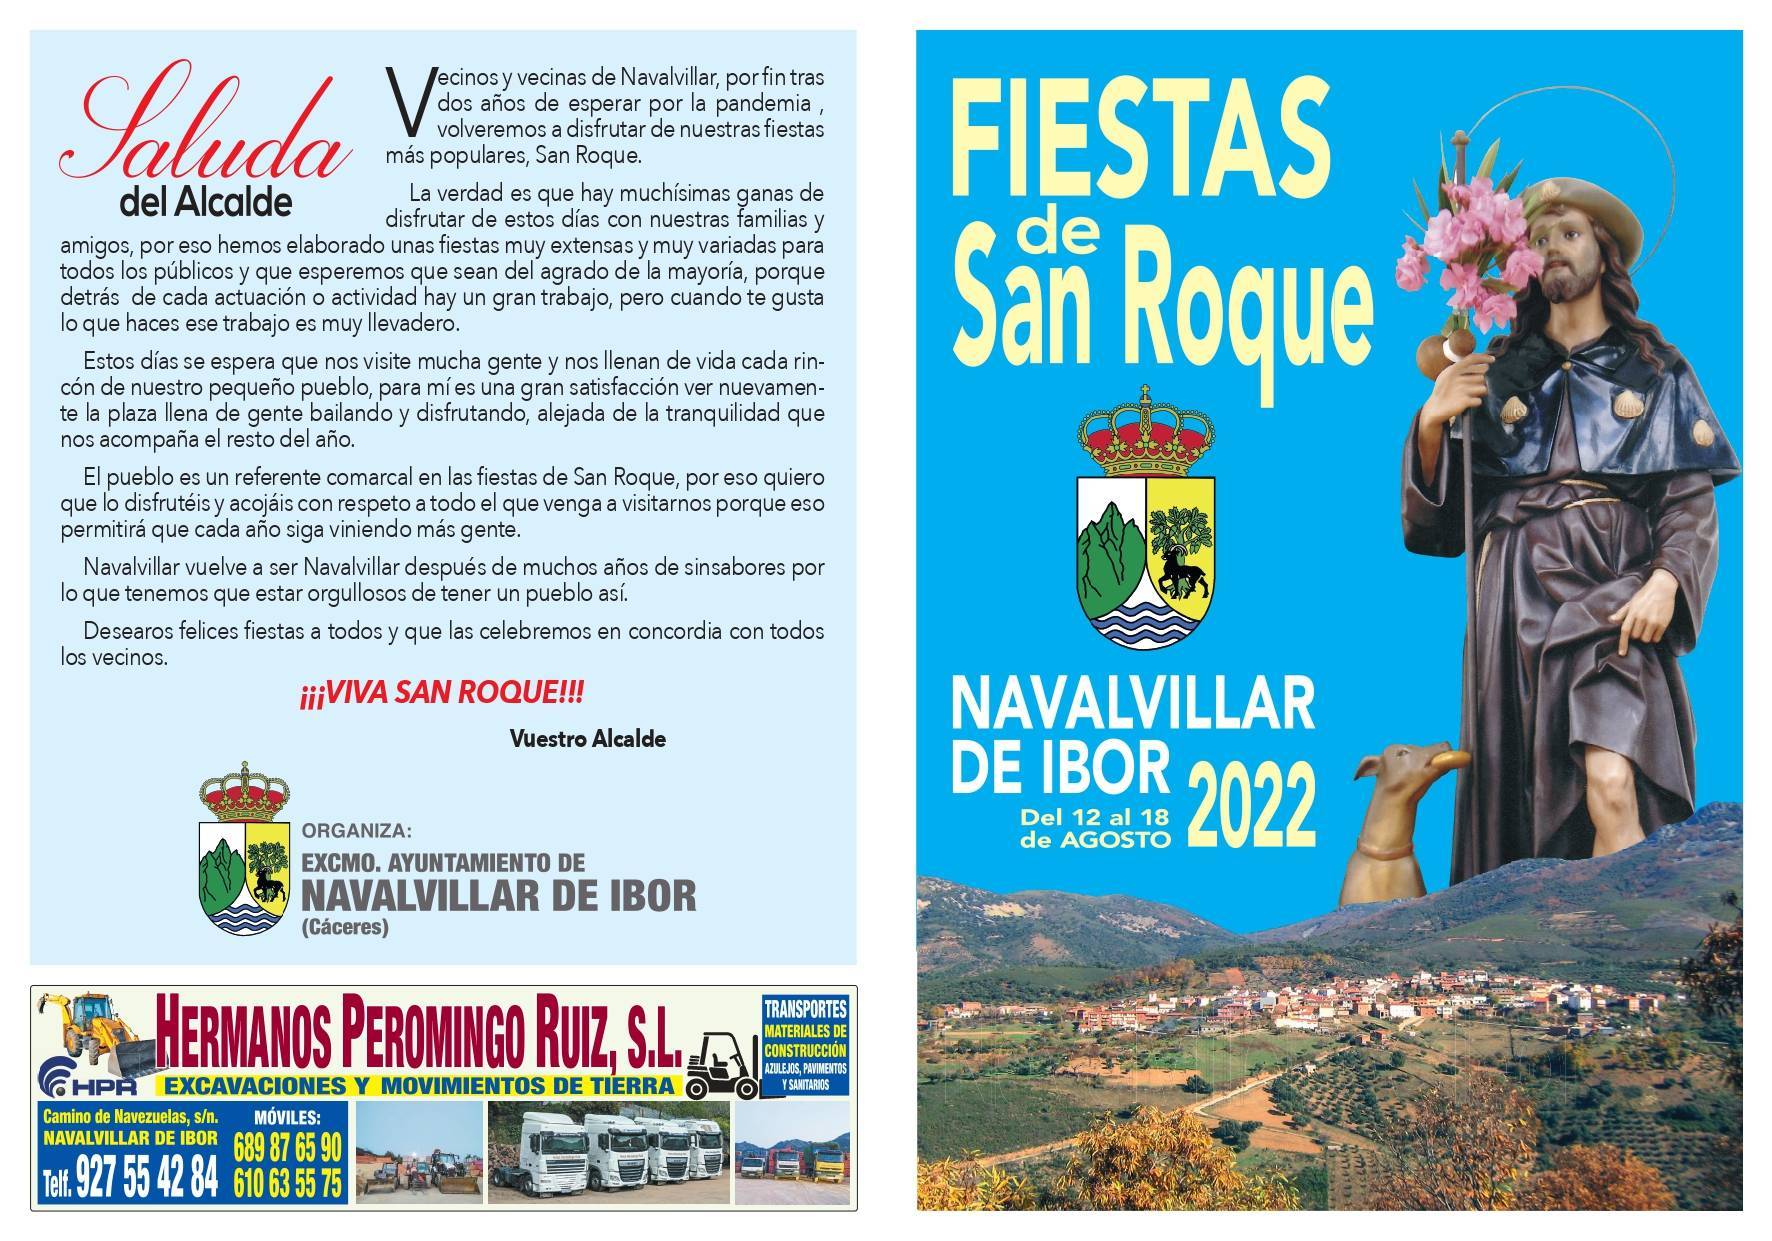 Fiestas de San Roque (2022) - Navalvillar de Ibor (Cáceres) 1